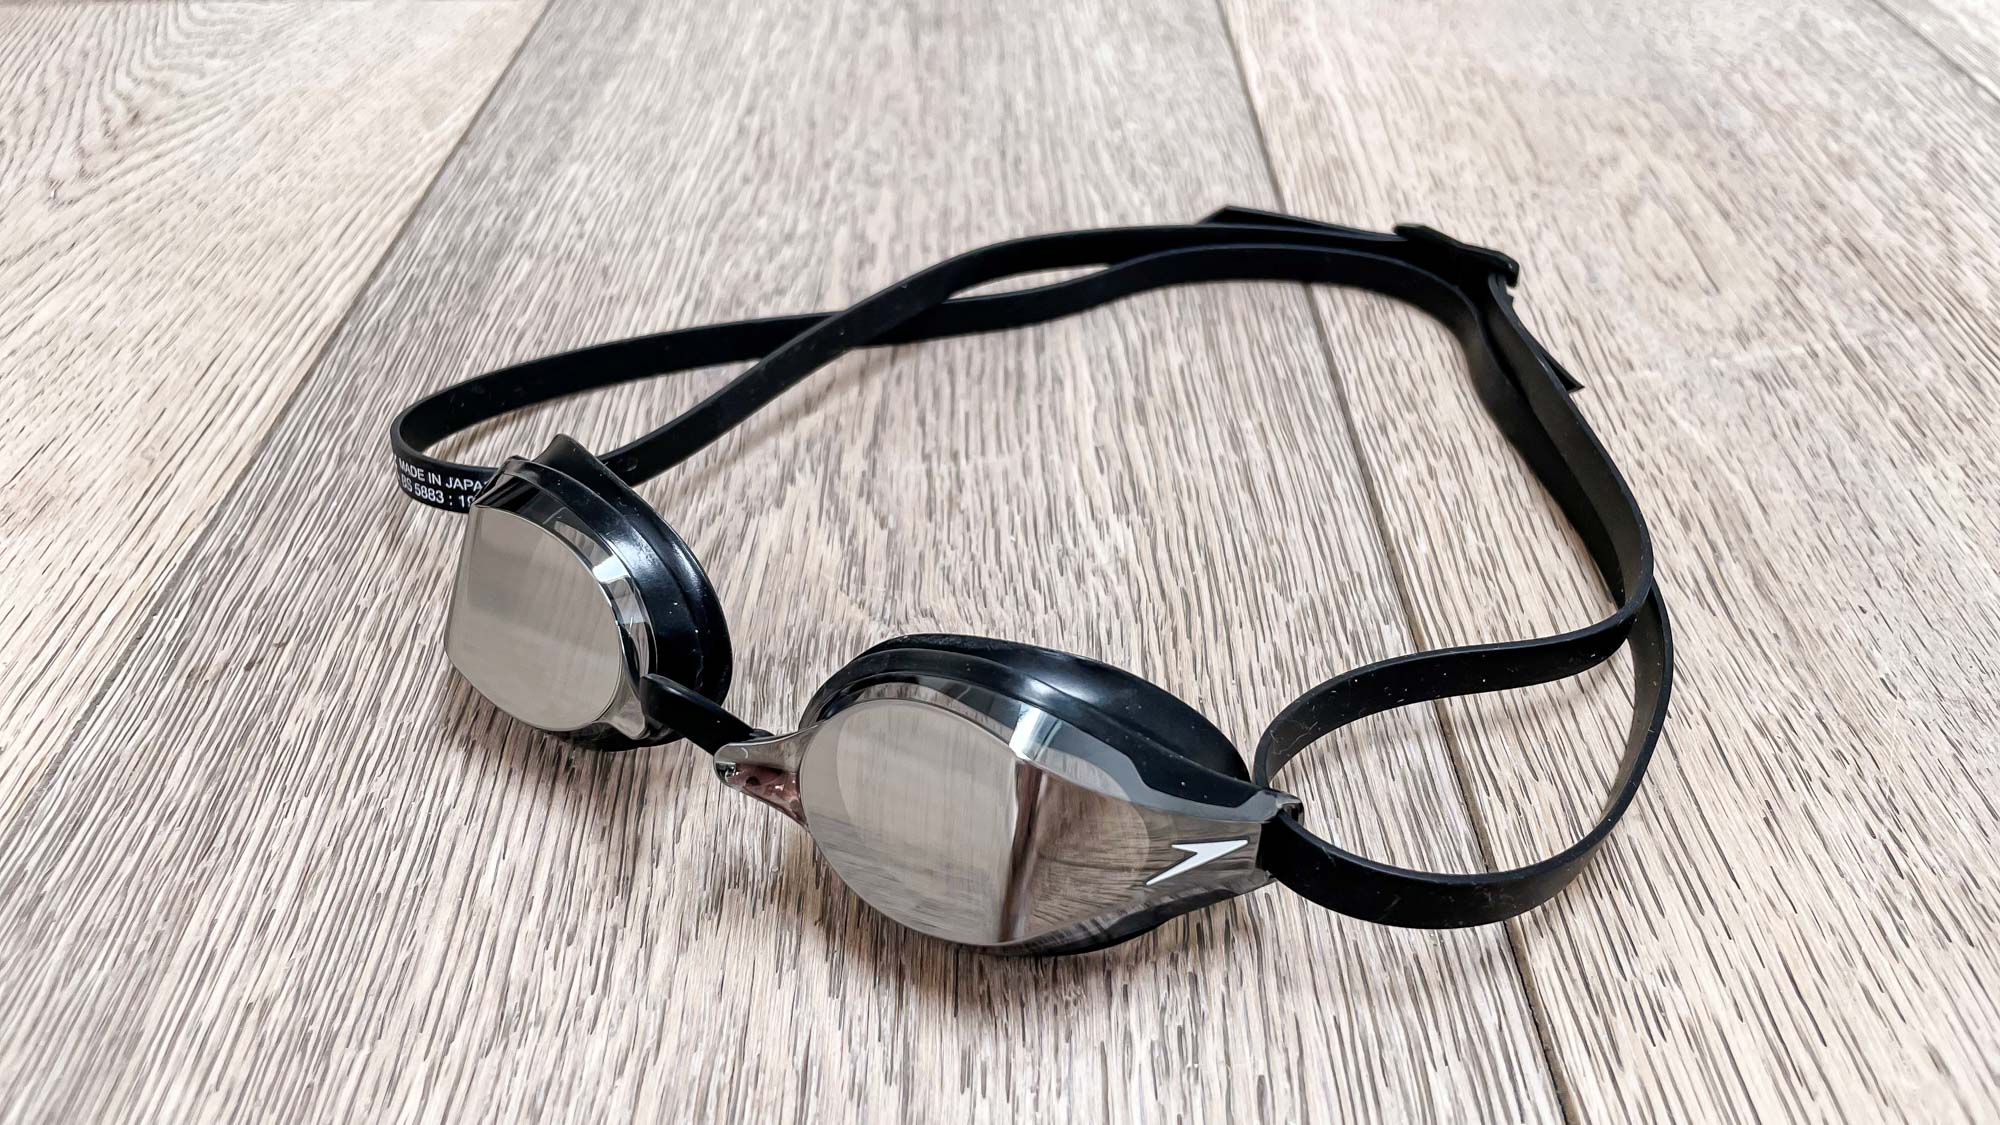 Best swimming goggles: Speedo Fastskin Speedsocket 2 Mirror Goggles